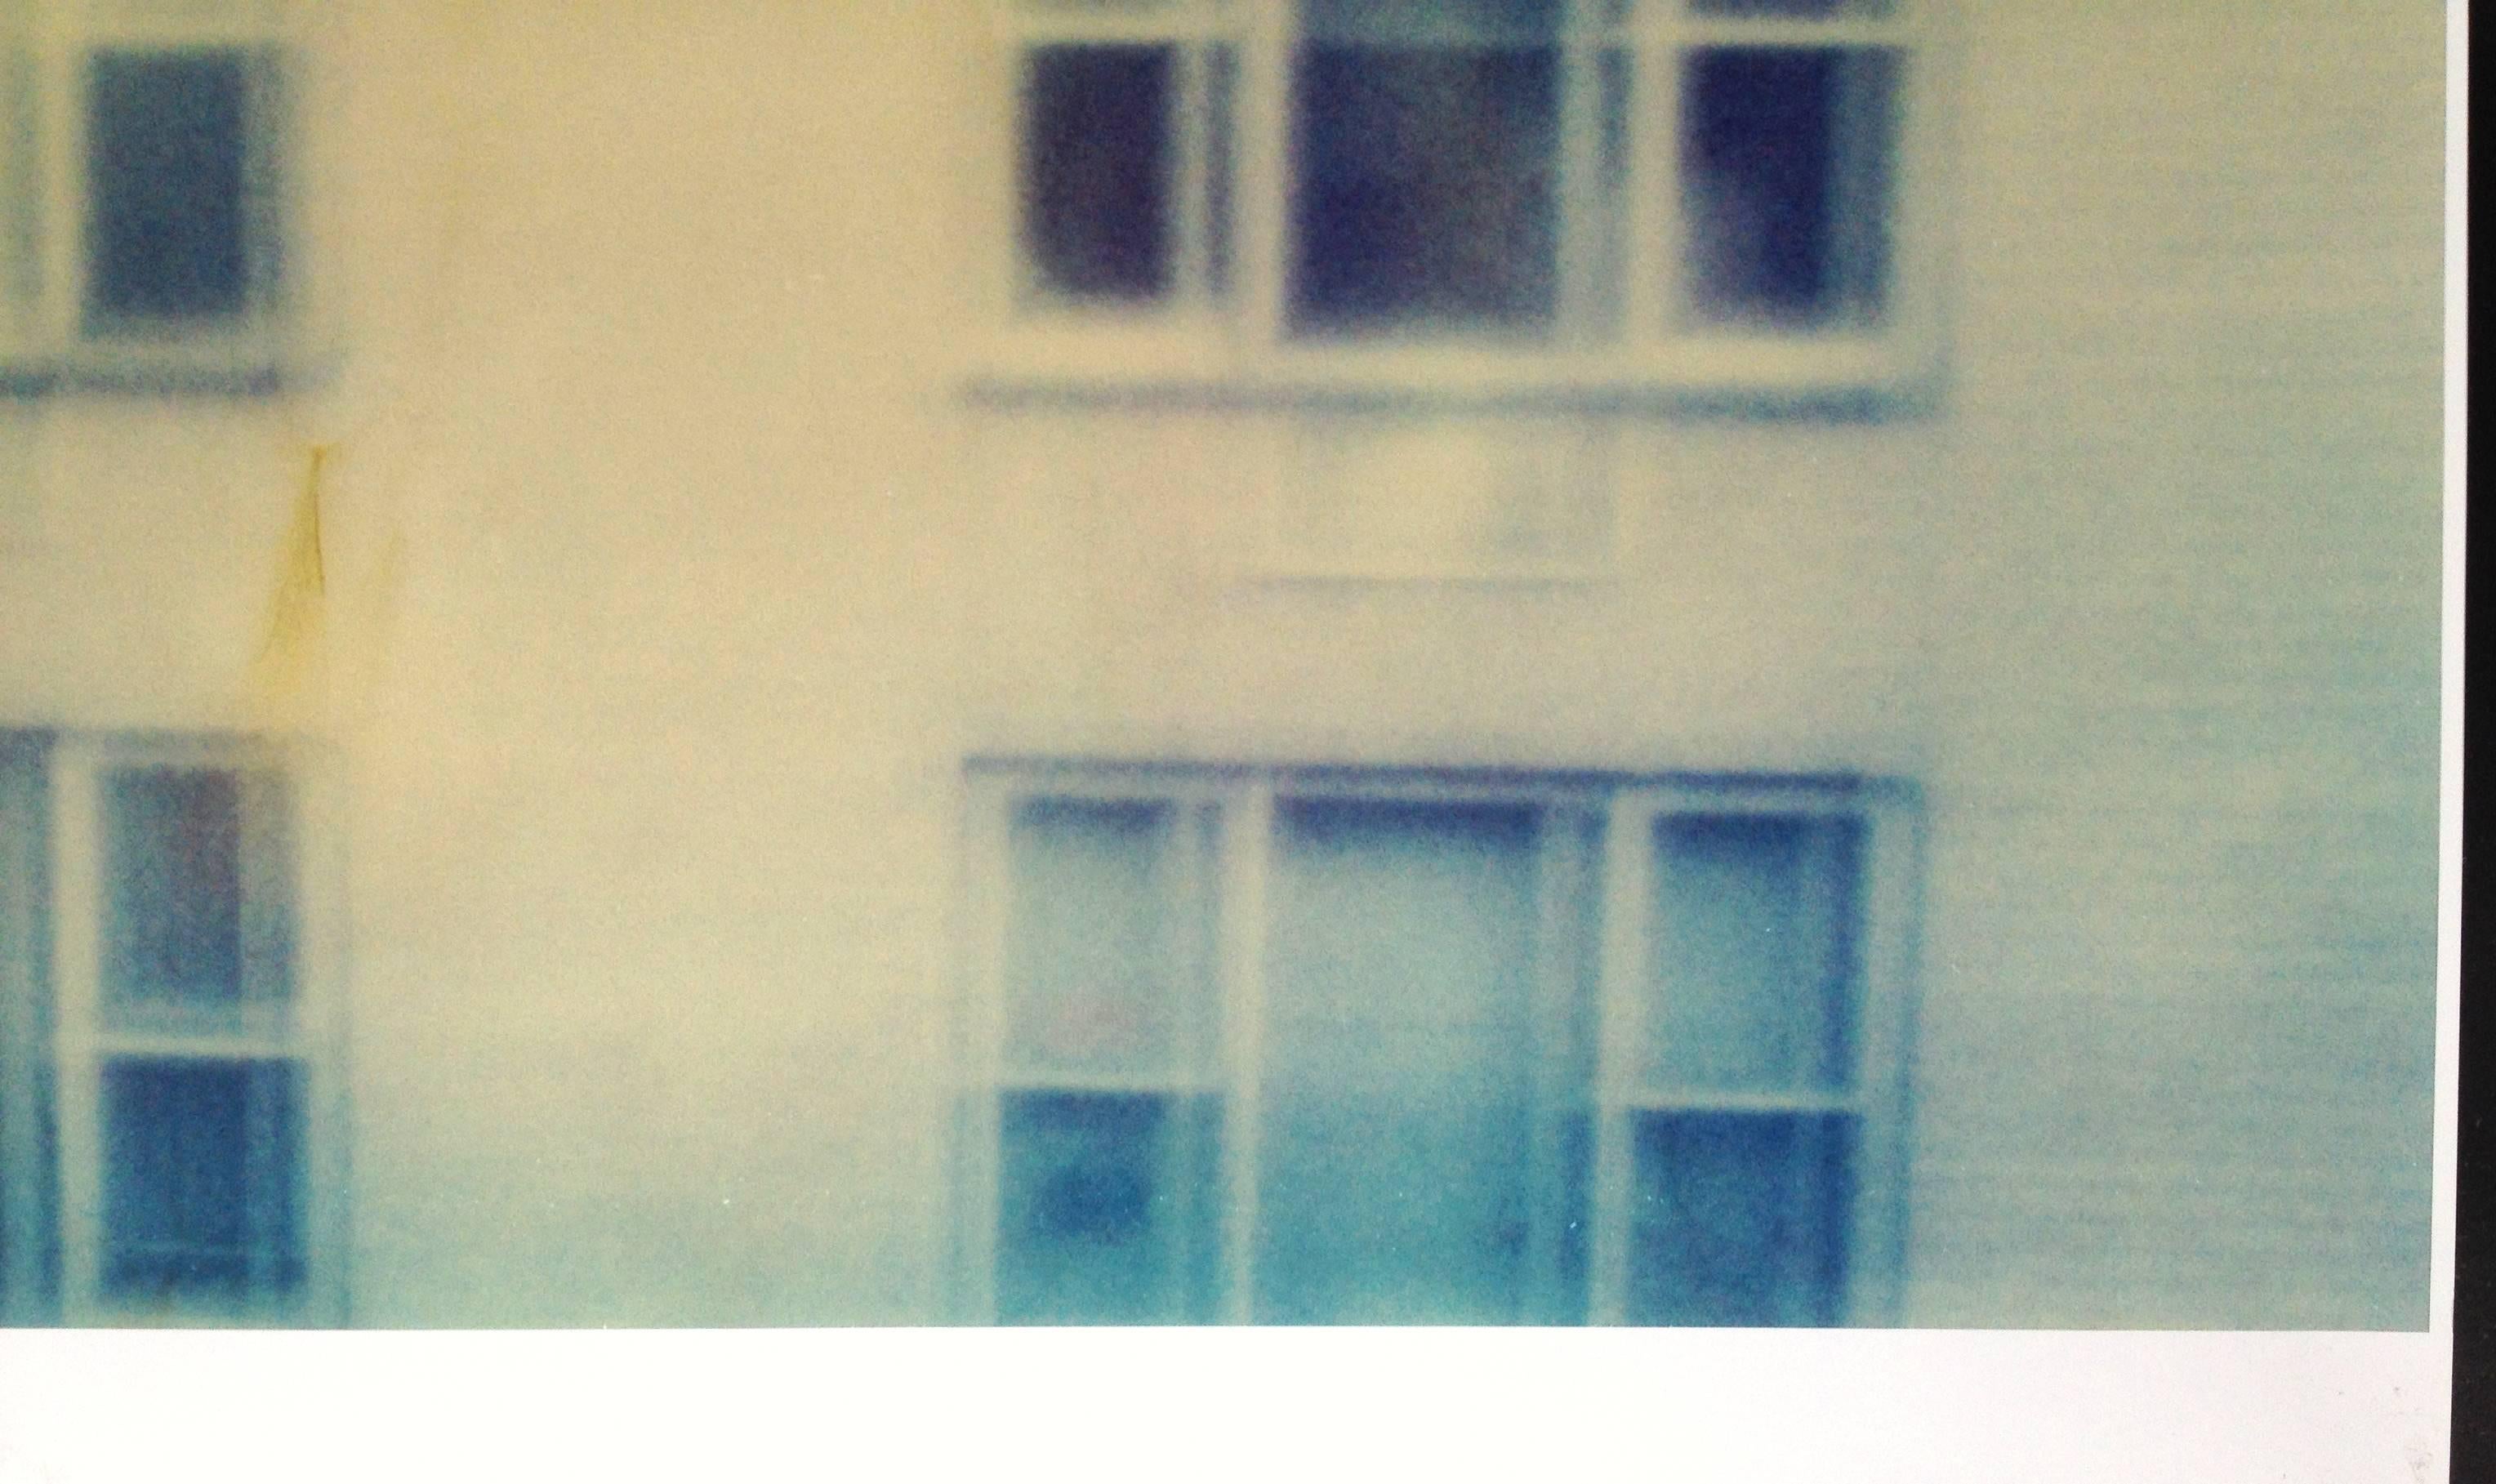 Across (Strange Love), 2006 -  

126x125cm 
Auflage von 5.  
Analoger C-Print, gedruckt auf Fuji Archivpapier, handgedruckt vom Künstler, basierend auf einem Polaroid. 
Unterschriftsetikett und Zertifikat.  
Künstlerinventar Nr. 6130A. 
Nicht